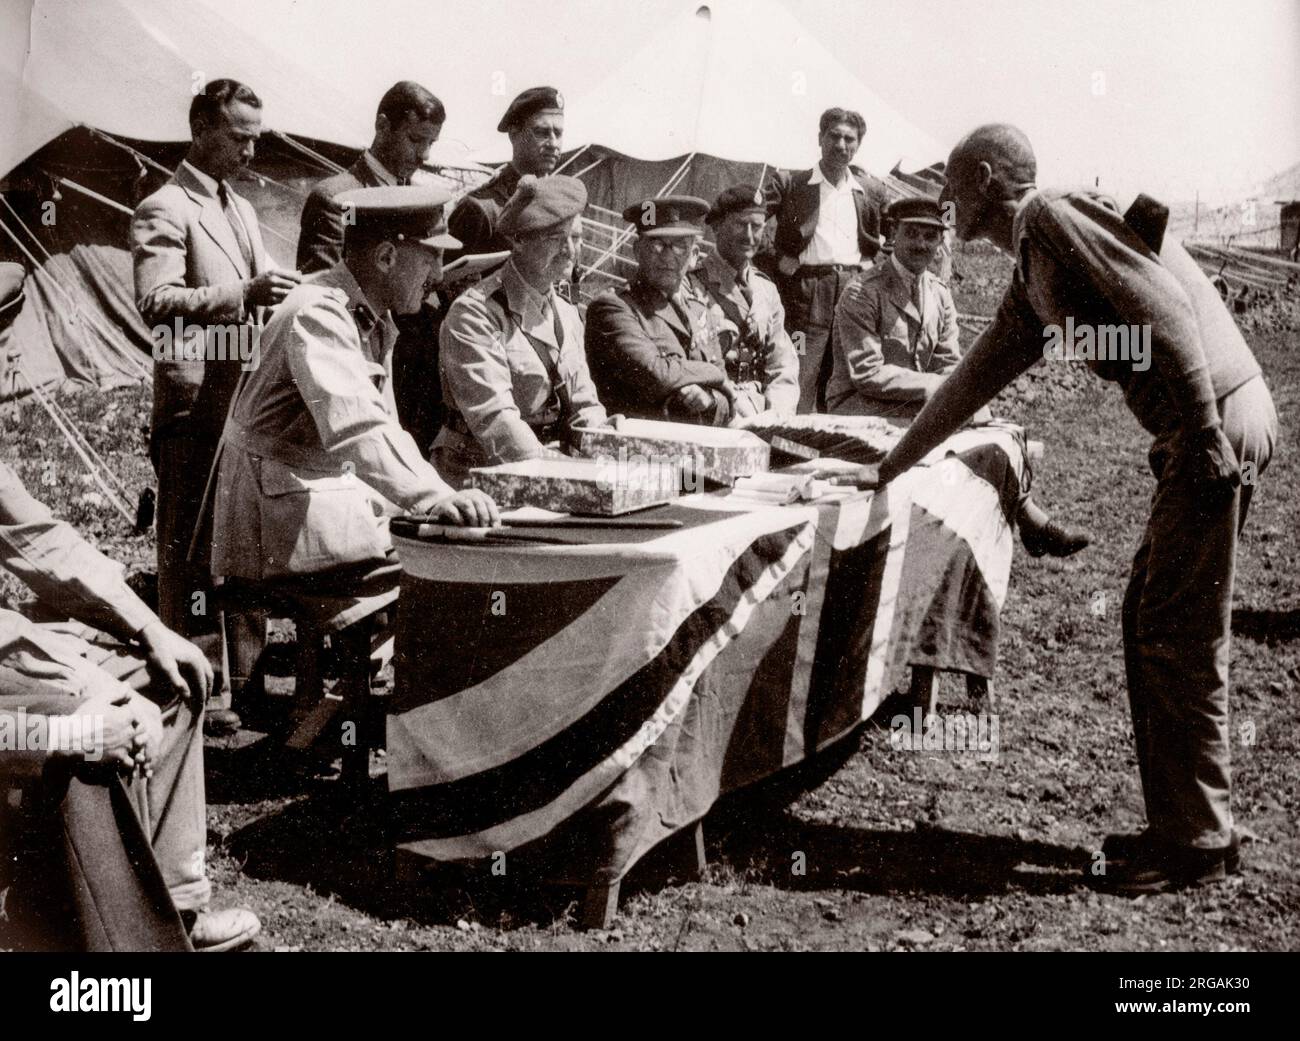 1943 Moyen-Orient Syrie - scène à Alep - recrues de l'armée britannique - recrute sous serment sur le Coran Photographie d'un officier de recrutement de l'armée britannique stationné en Afrique de l'est et au Moyen-Orient pendant la Seconde Guerre mondiale Banque D'Images